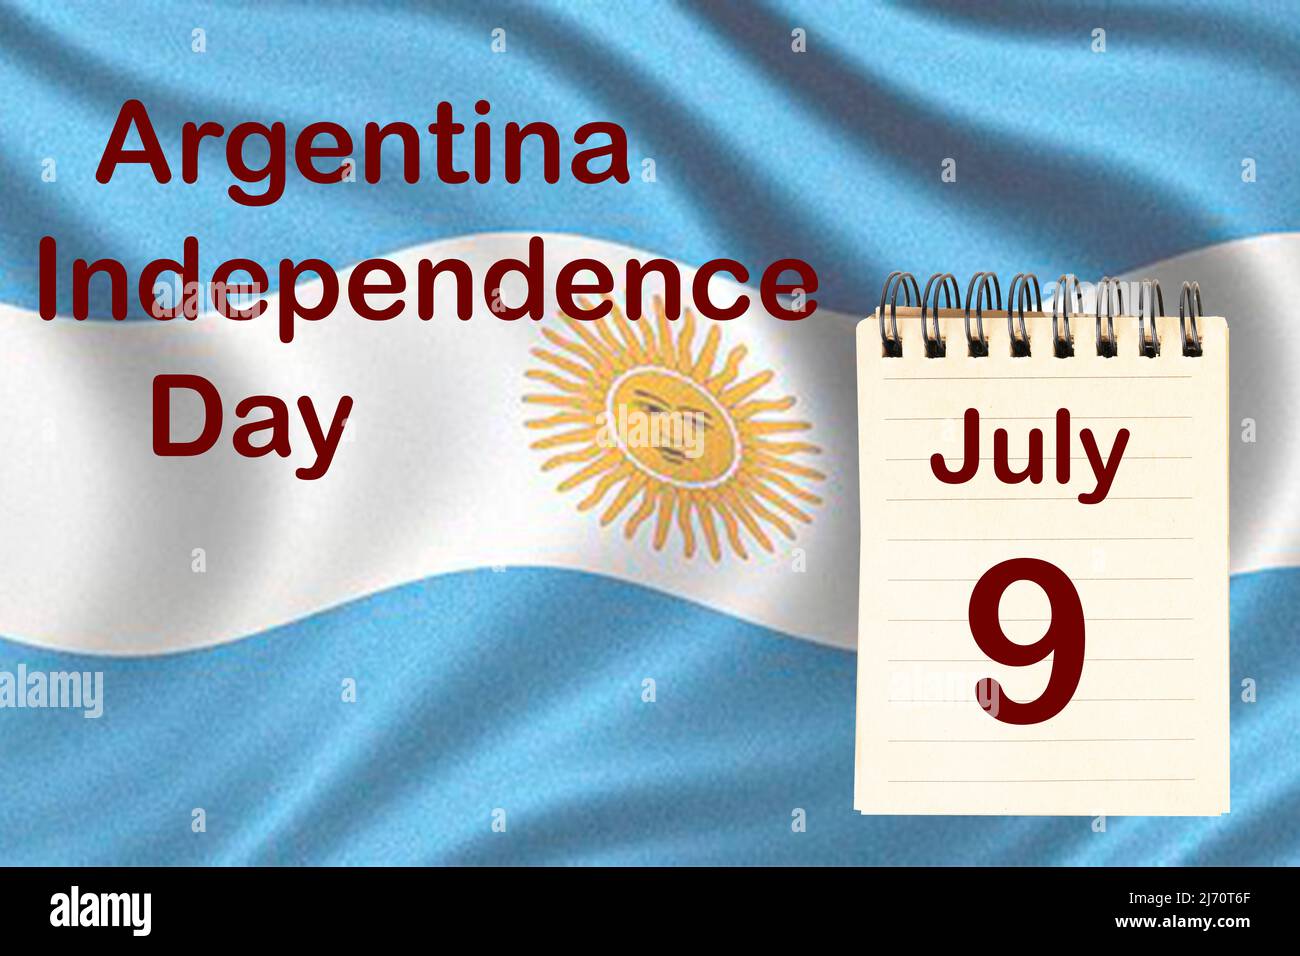 La celebración del Día de la Independencia de Argentina con la bandera y el calendario que indica el 9 de julio Foto de stock